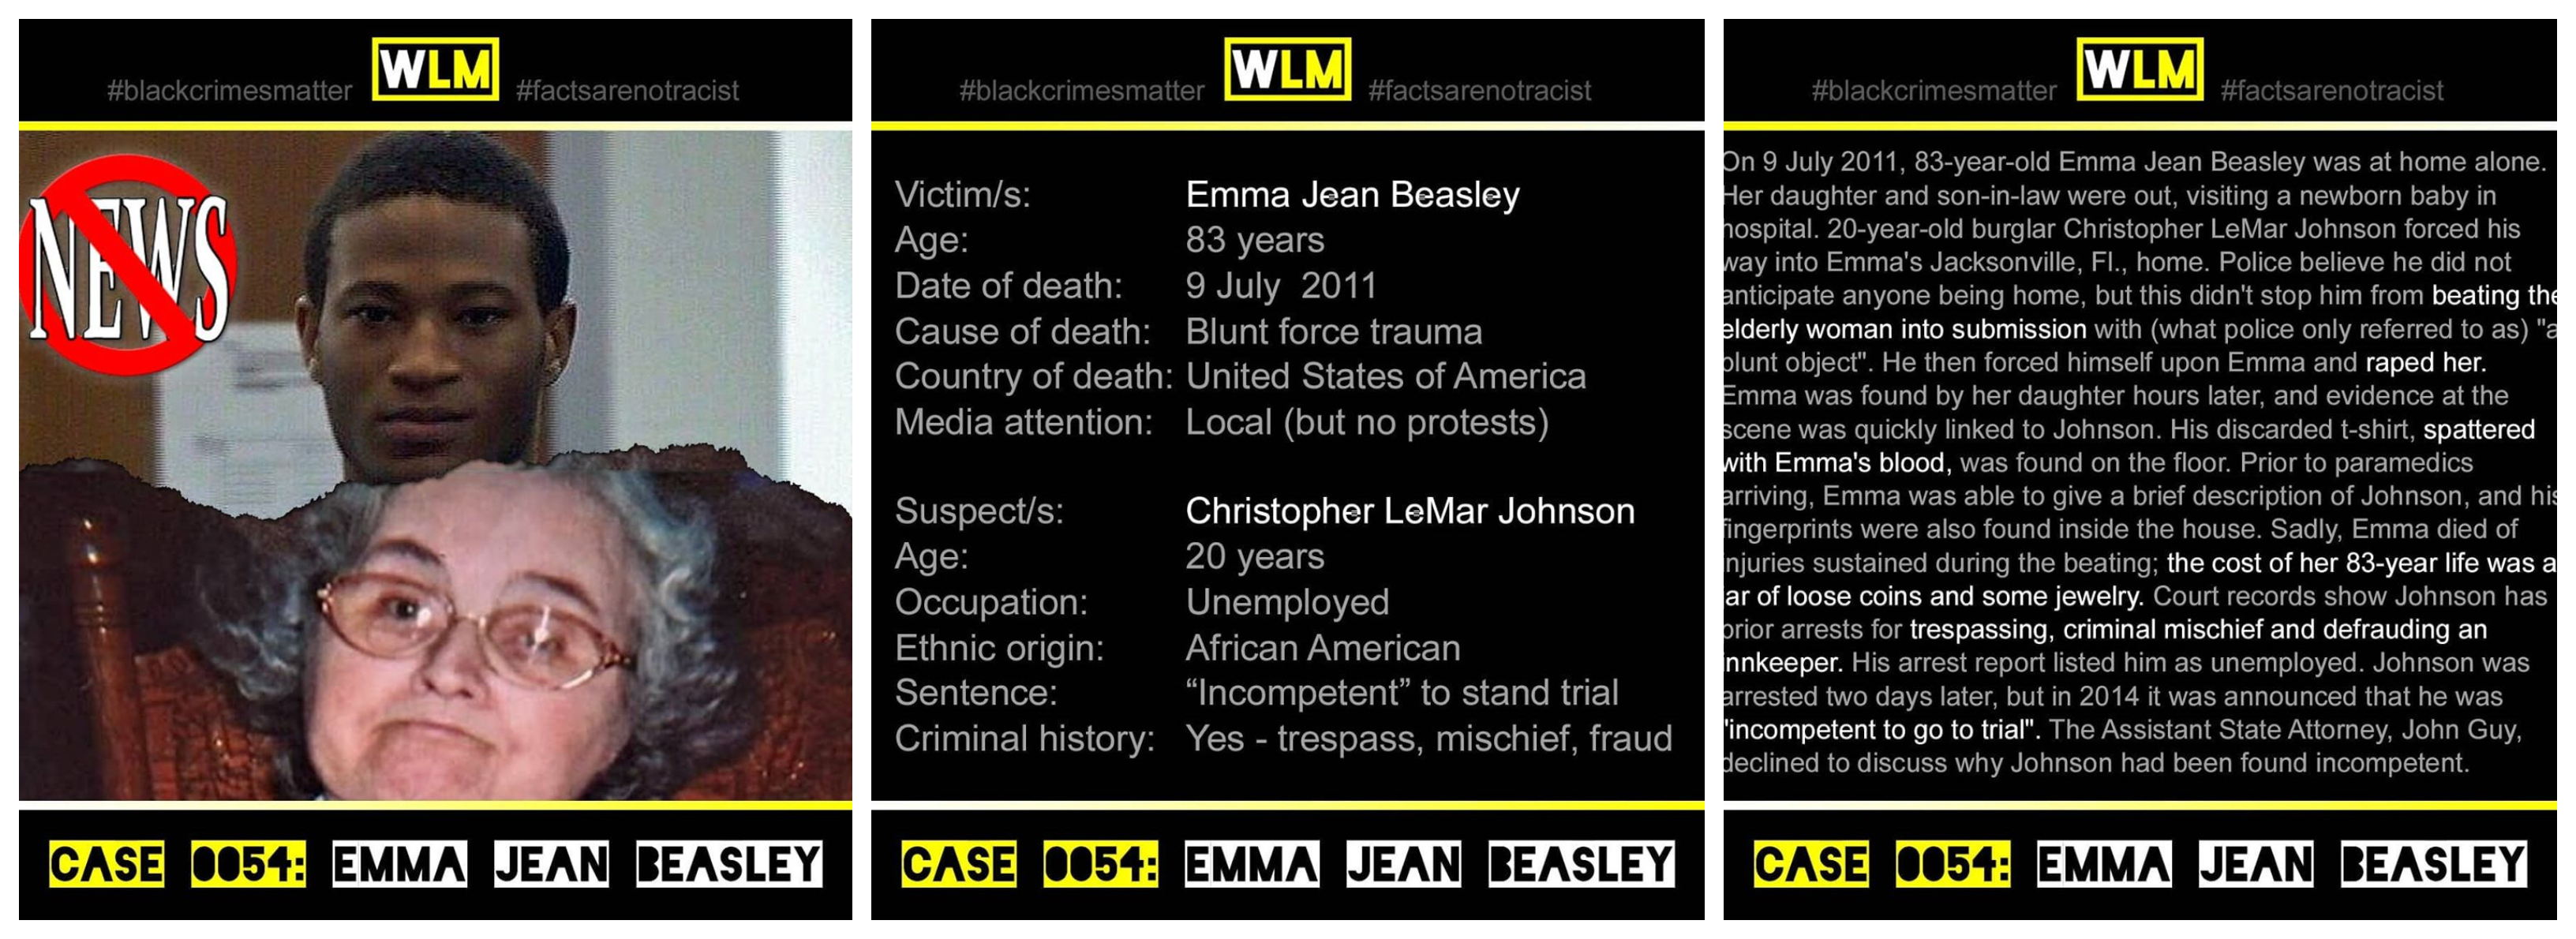 case-054-emma-jean-beasley